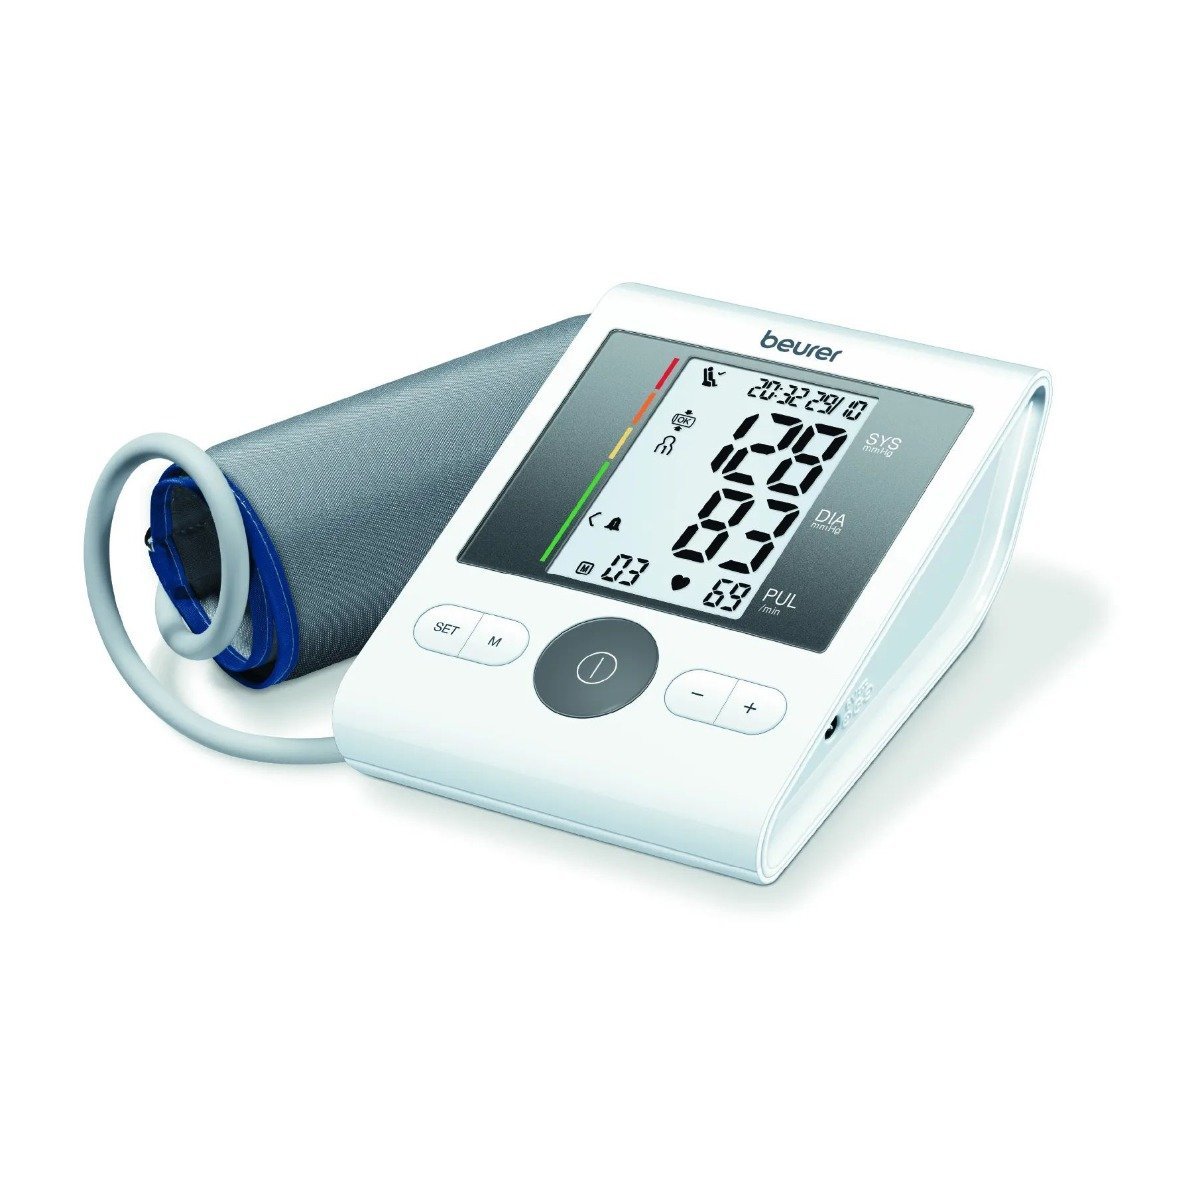 Beurer Bm28 Upper Arm Blood Pressure Monitor - Bloom Pharmacy